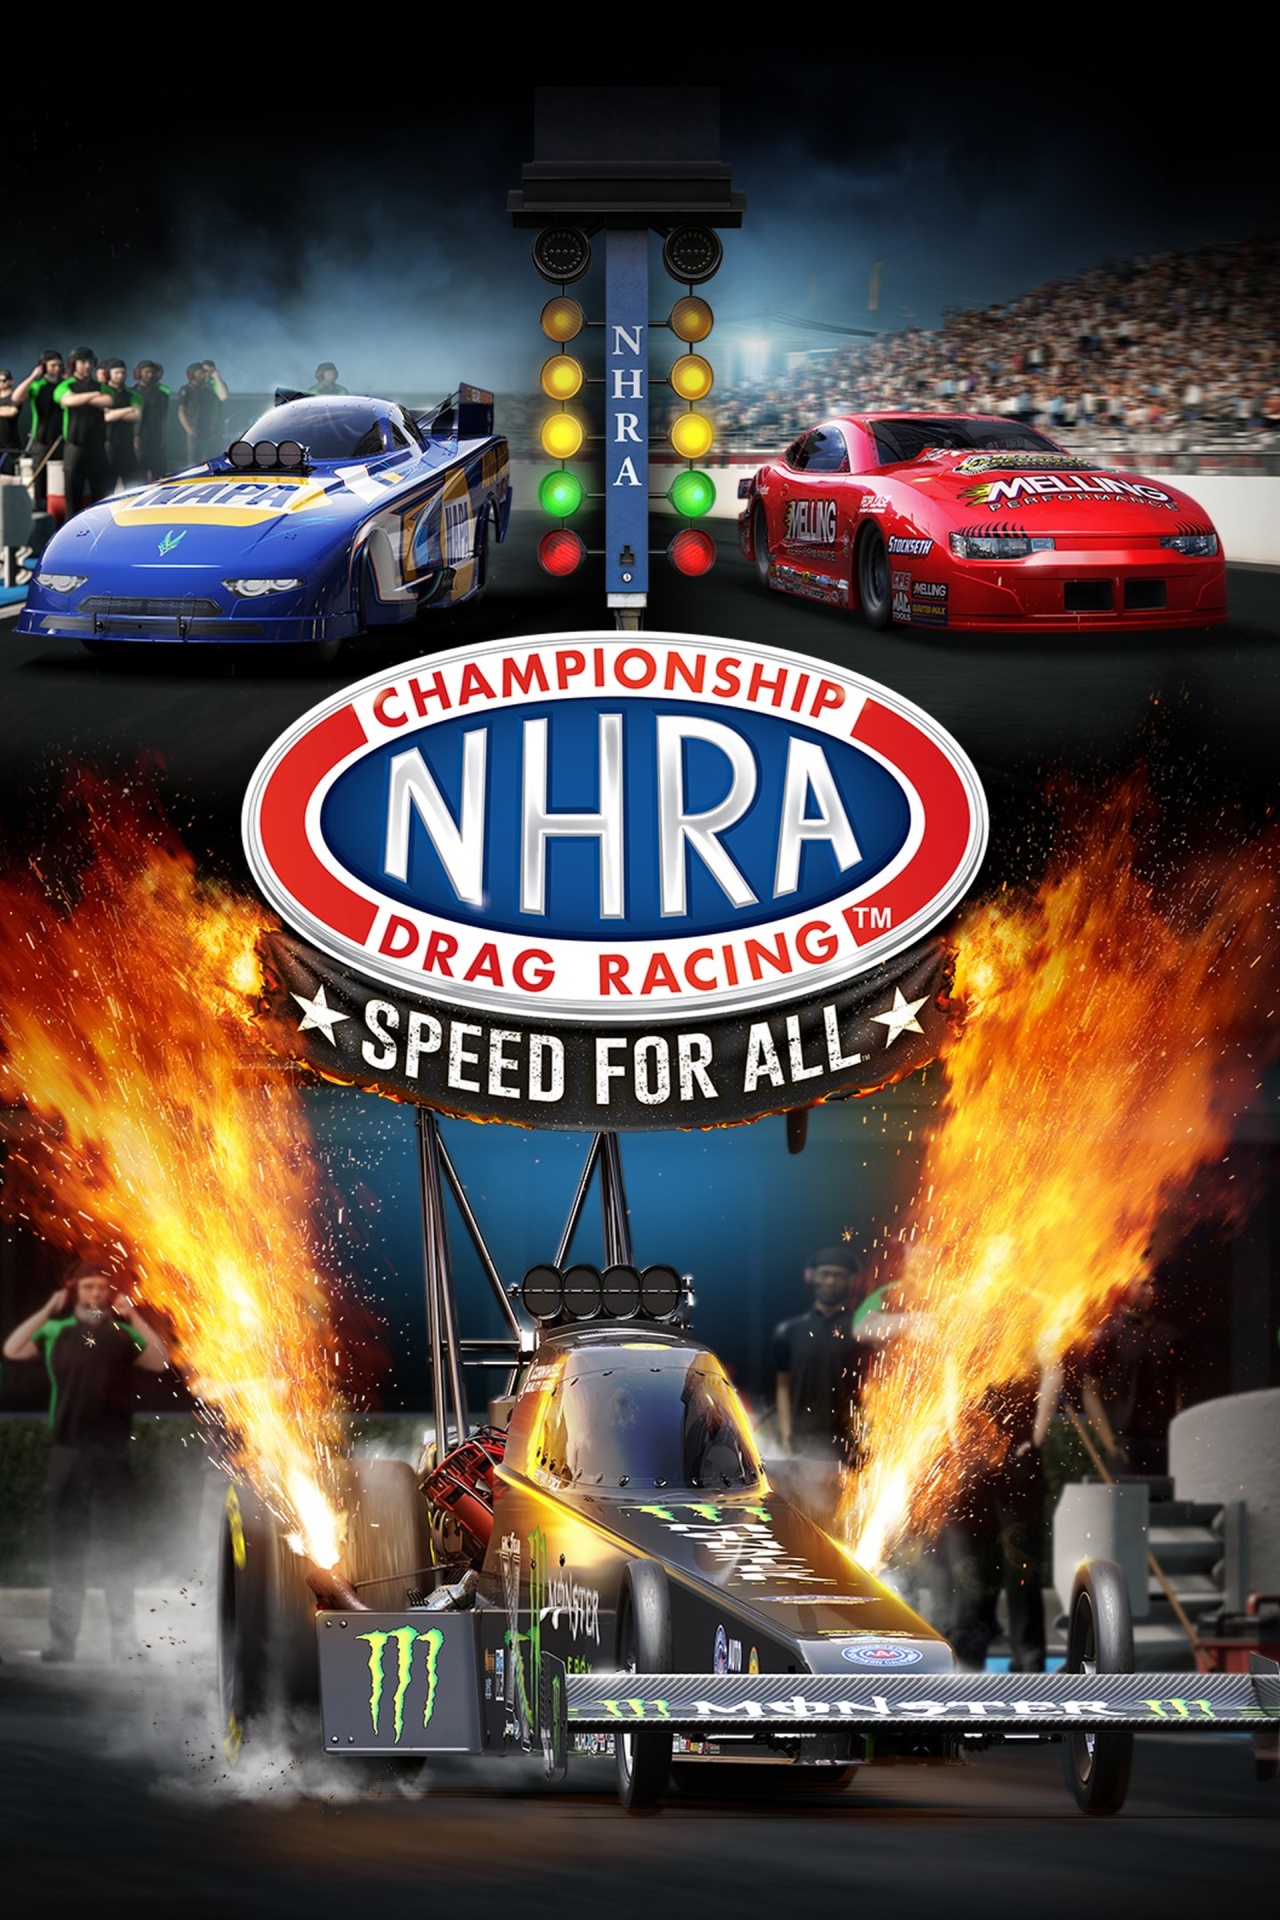 Skrzynia wyścigowa NHRA Drag Racing Art